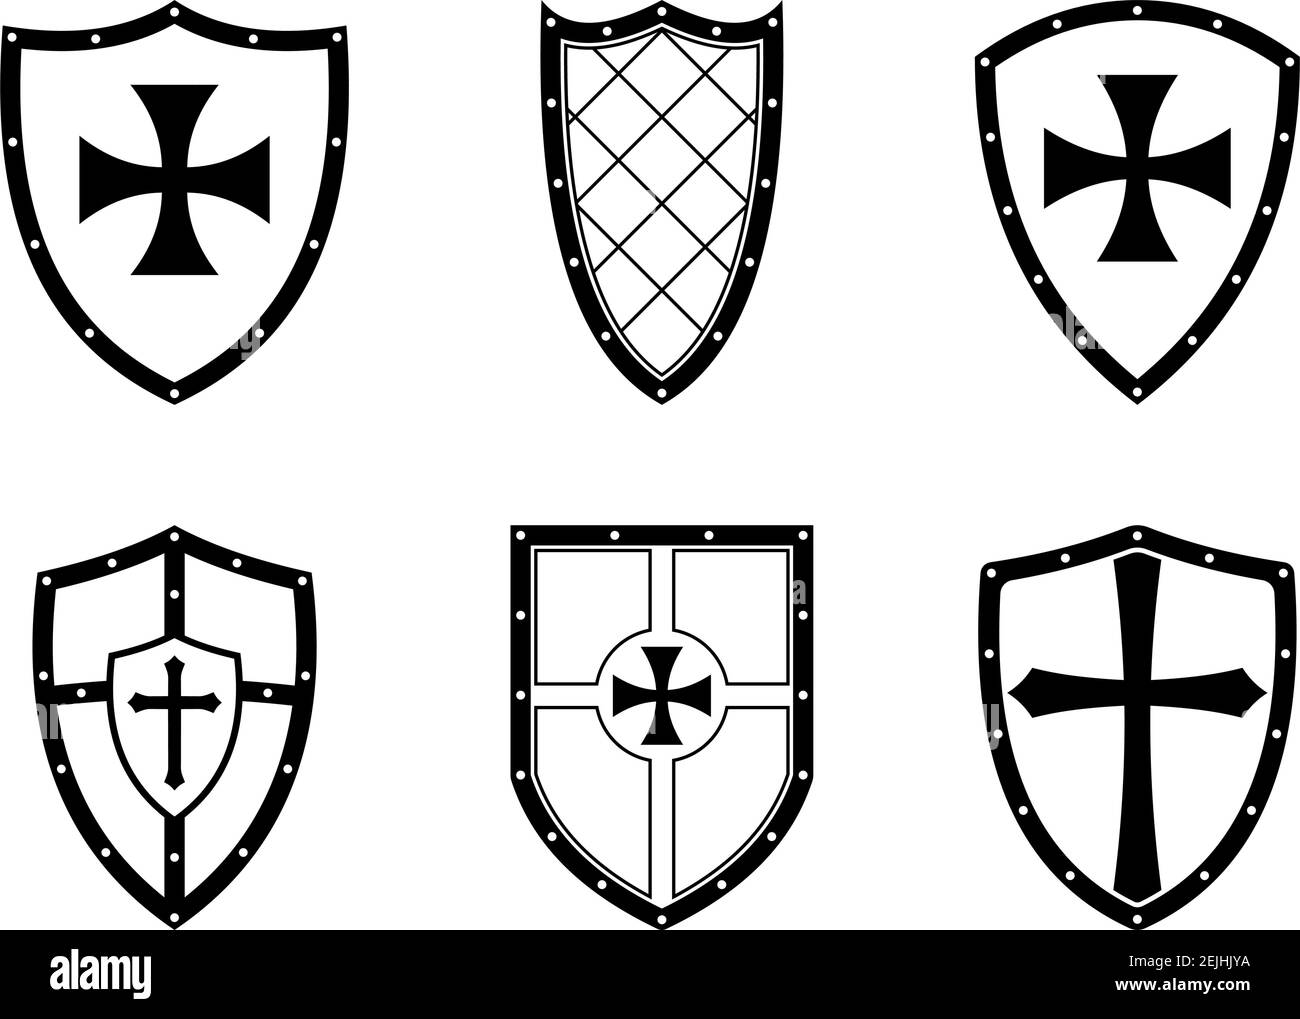 Knight Shield auf weißem, isoliertem Hintergrund. Schwarz-Weiß Vektor Illustration von einfachen Wappon Schilden. Stock Vektor